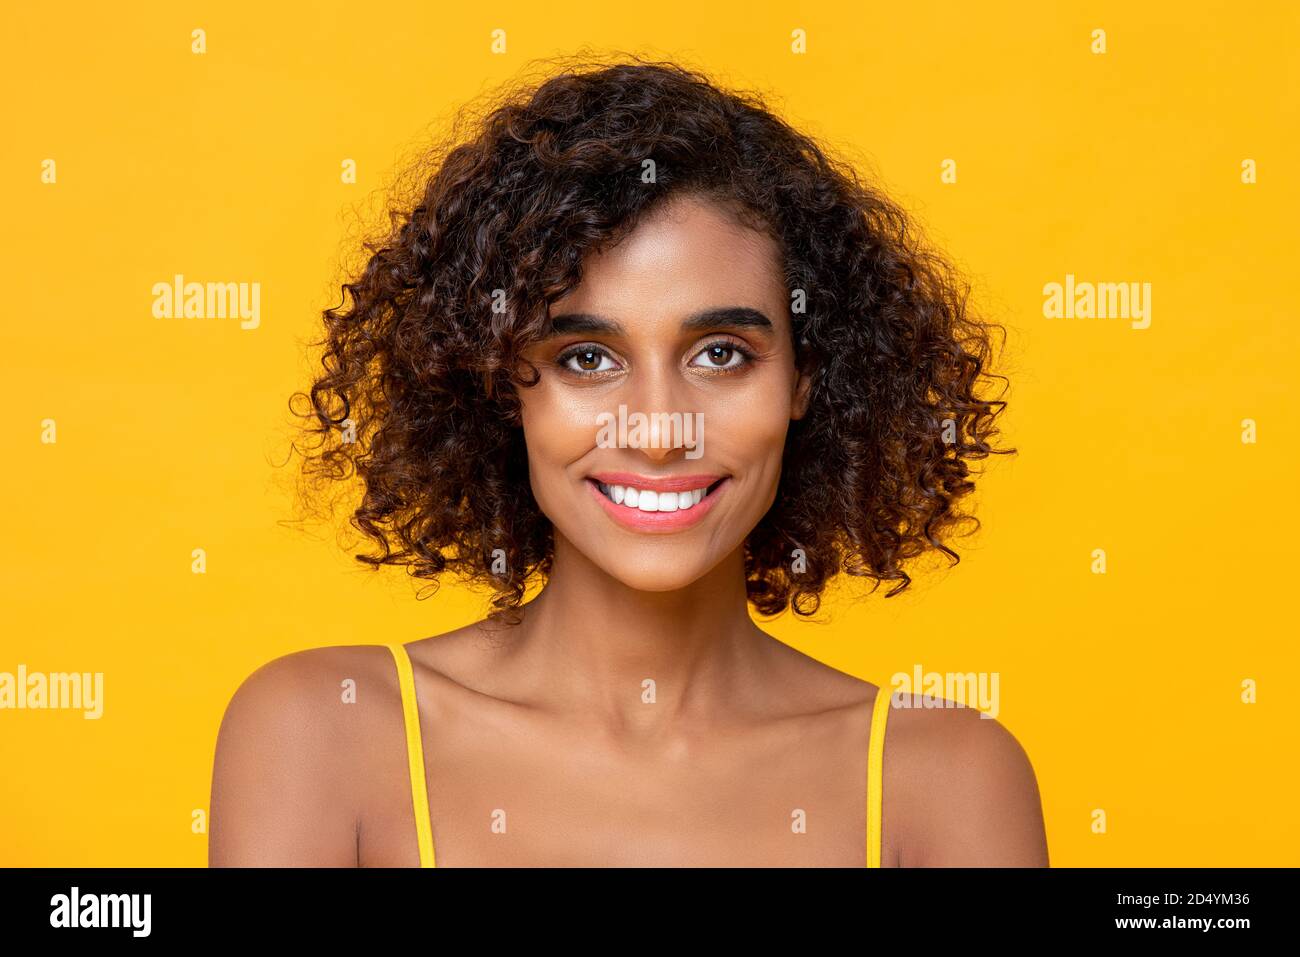 Glücklich lächelnd schöne afroamerikanische Frau Blick auf Kamera isoliert Auf farbigem gelben Hintergrund Stockfoto